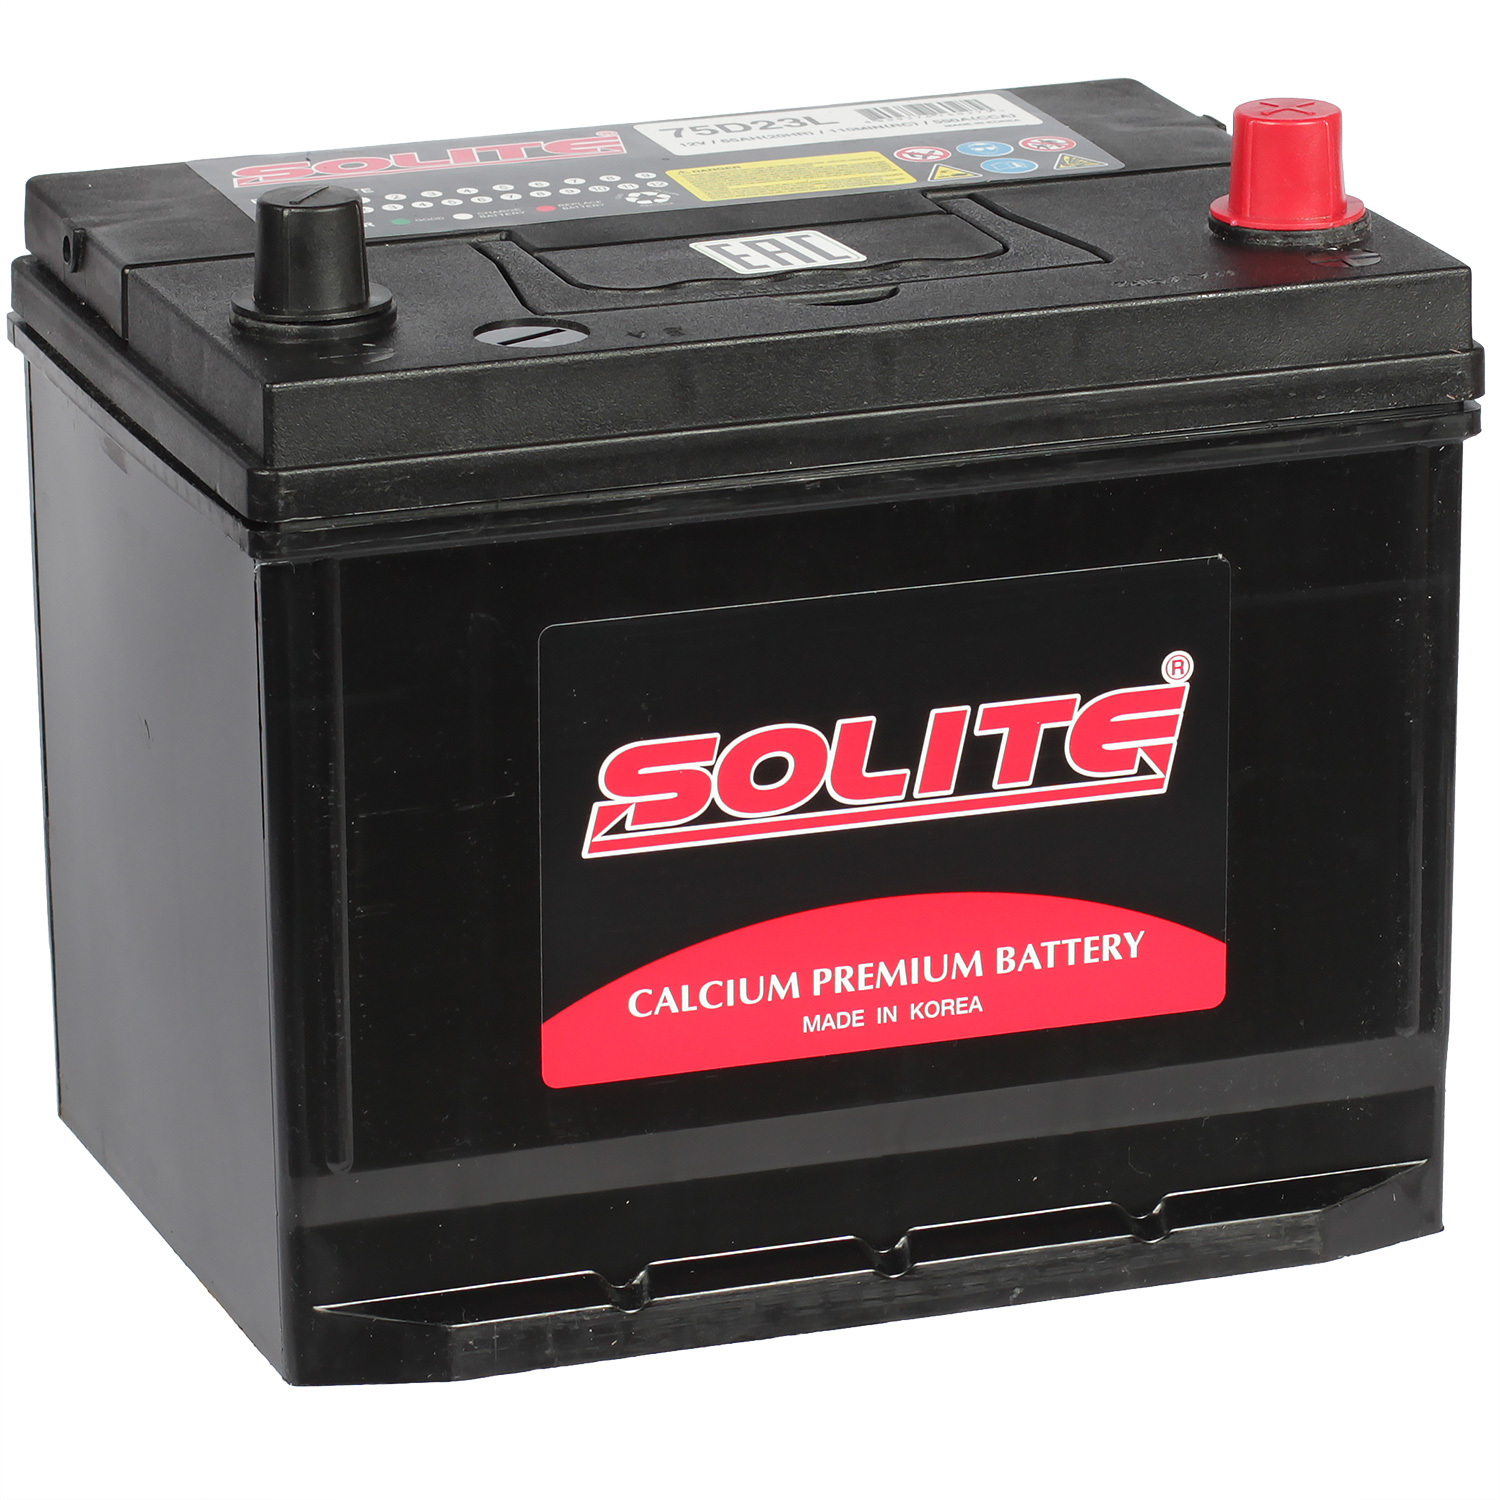 Solite Автомобильный аккумулятор Solite Asia 65 Ач обратная полярность D23L solite автомобильный аккумулятор solite 85 ач обратная полярность d23l